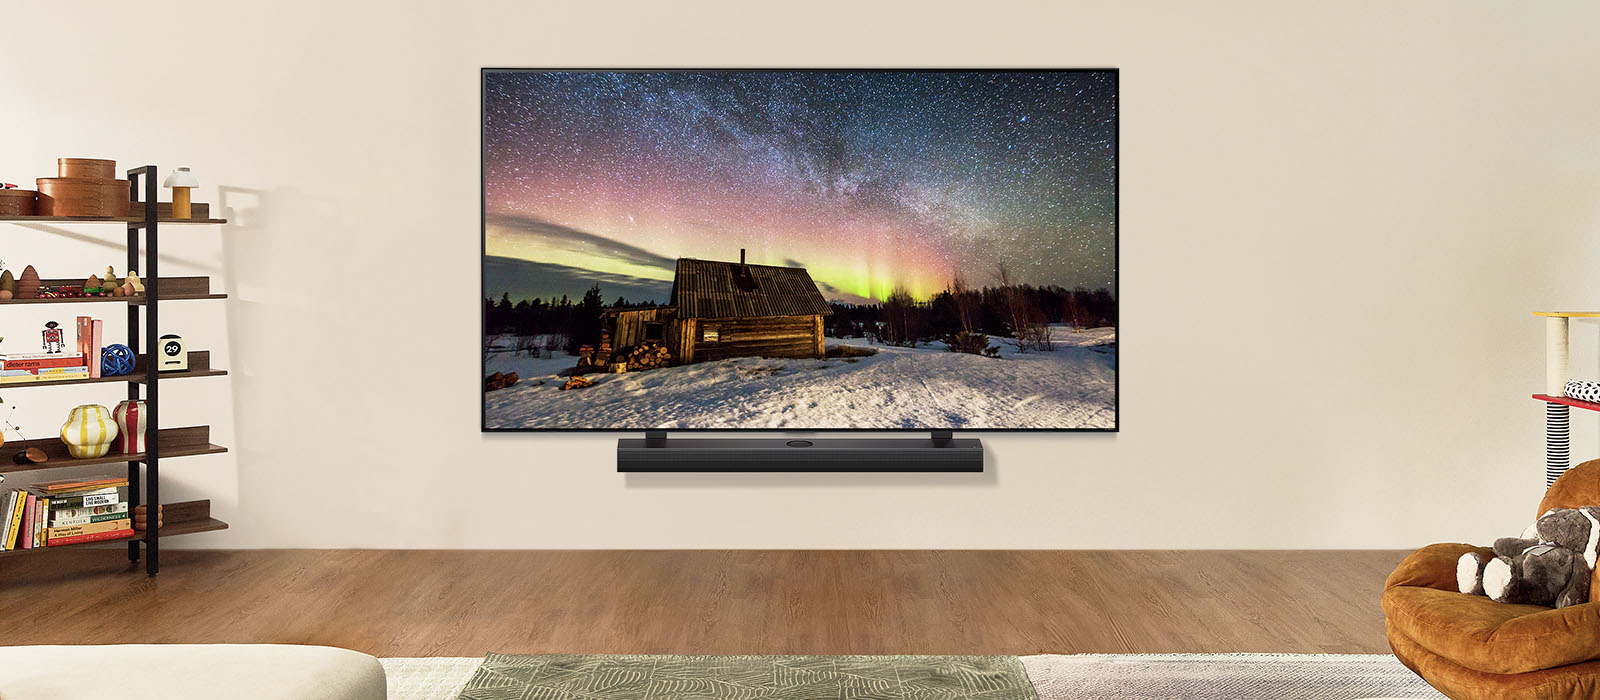 LG TV та LG Soundbar у сучасному житловому приміщенні вдень. Екранне зображення полярного сяйва відображається з ідеальними рівнями яскравості.